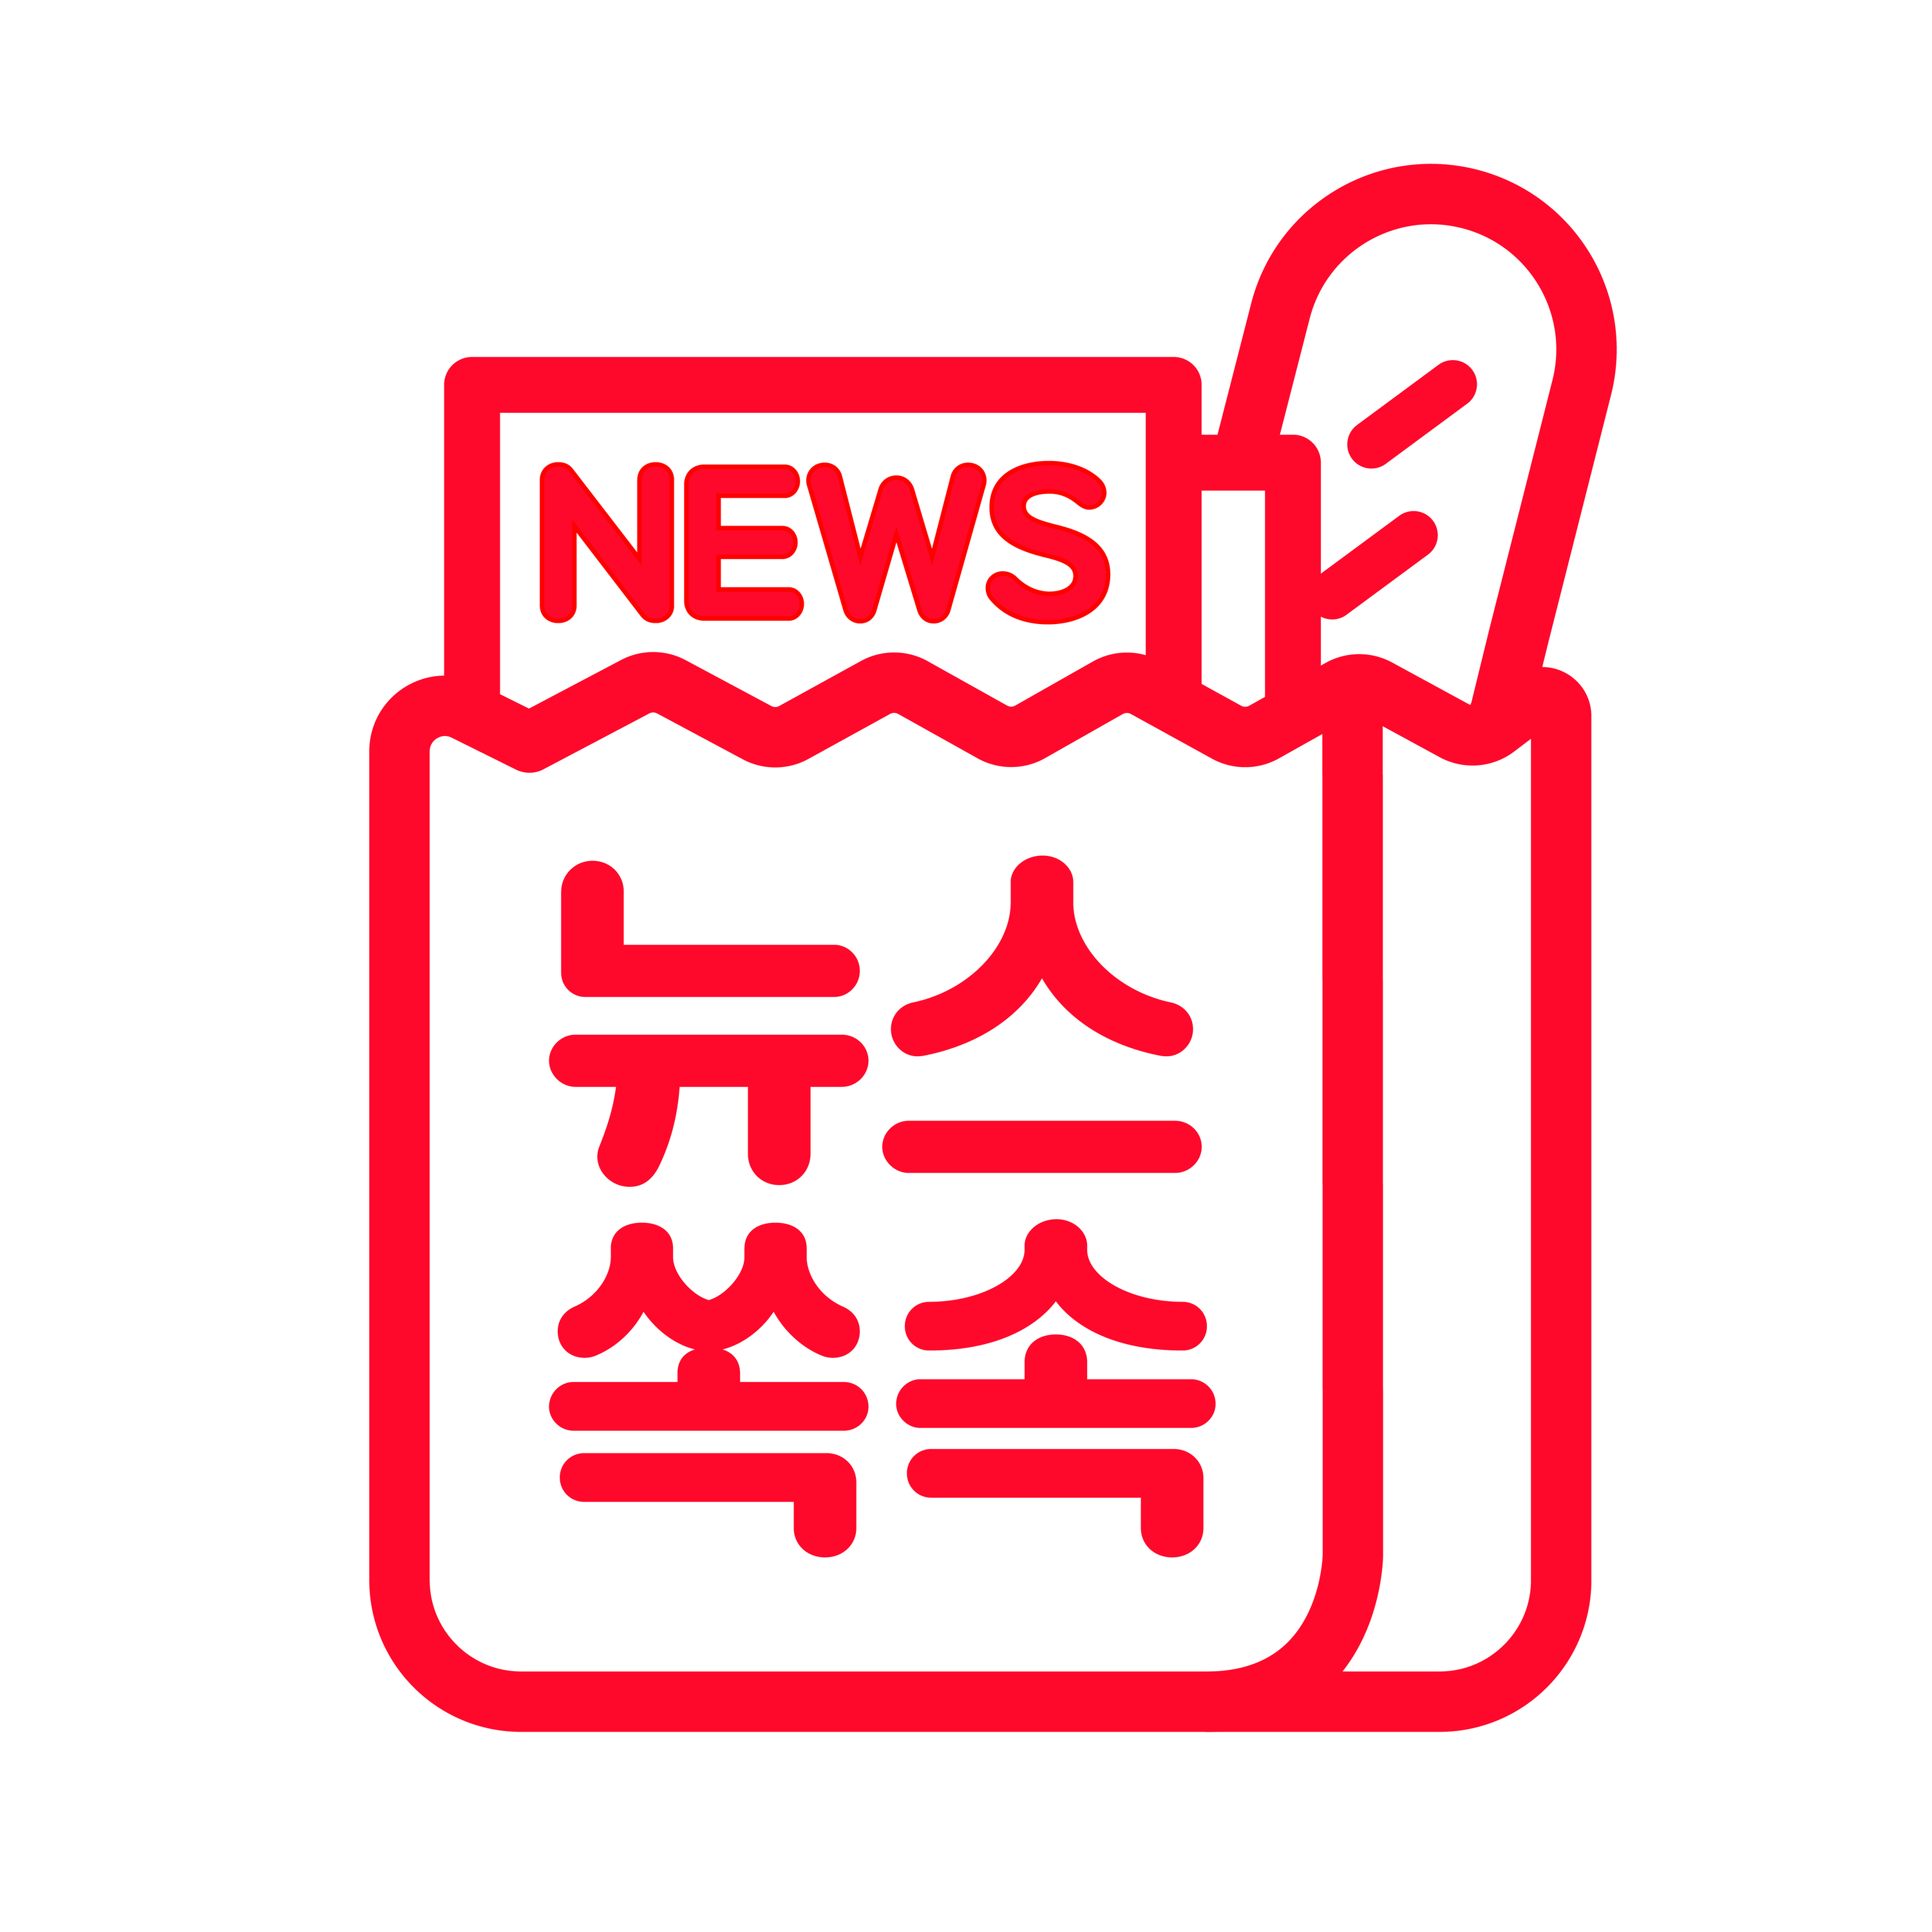 6/29(화) 윤석열, 오늘 오후 1시 대선출마 선언...총 113개 언론사 취재 신청